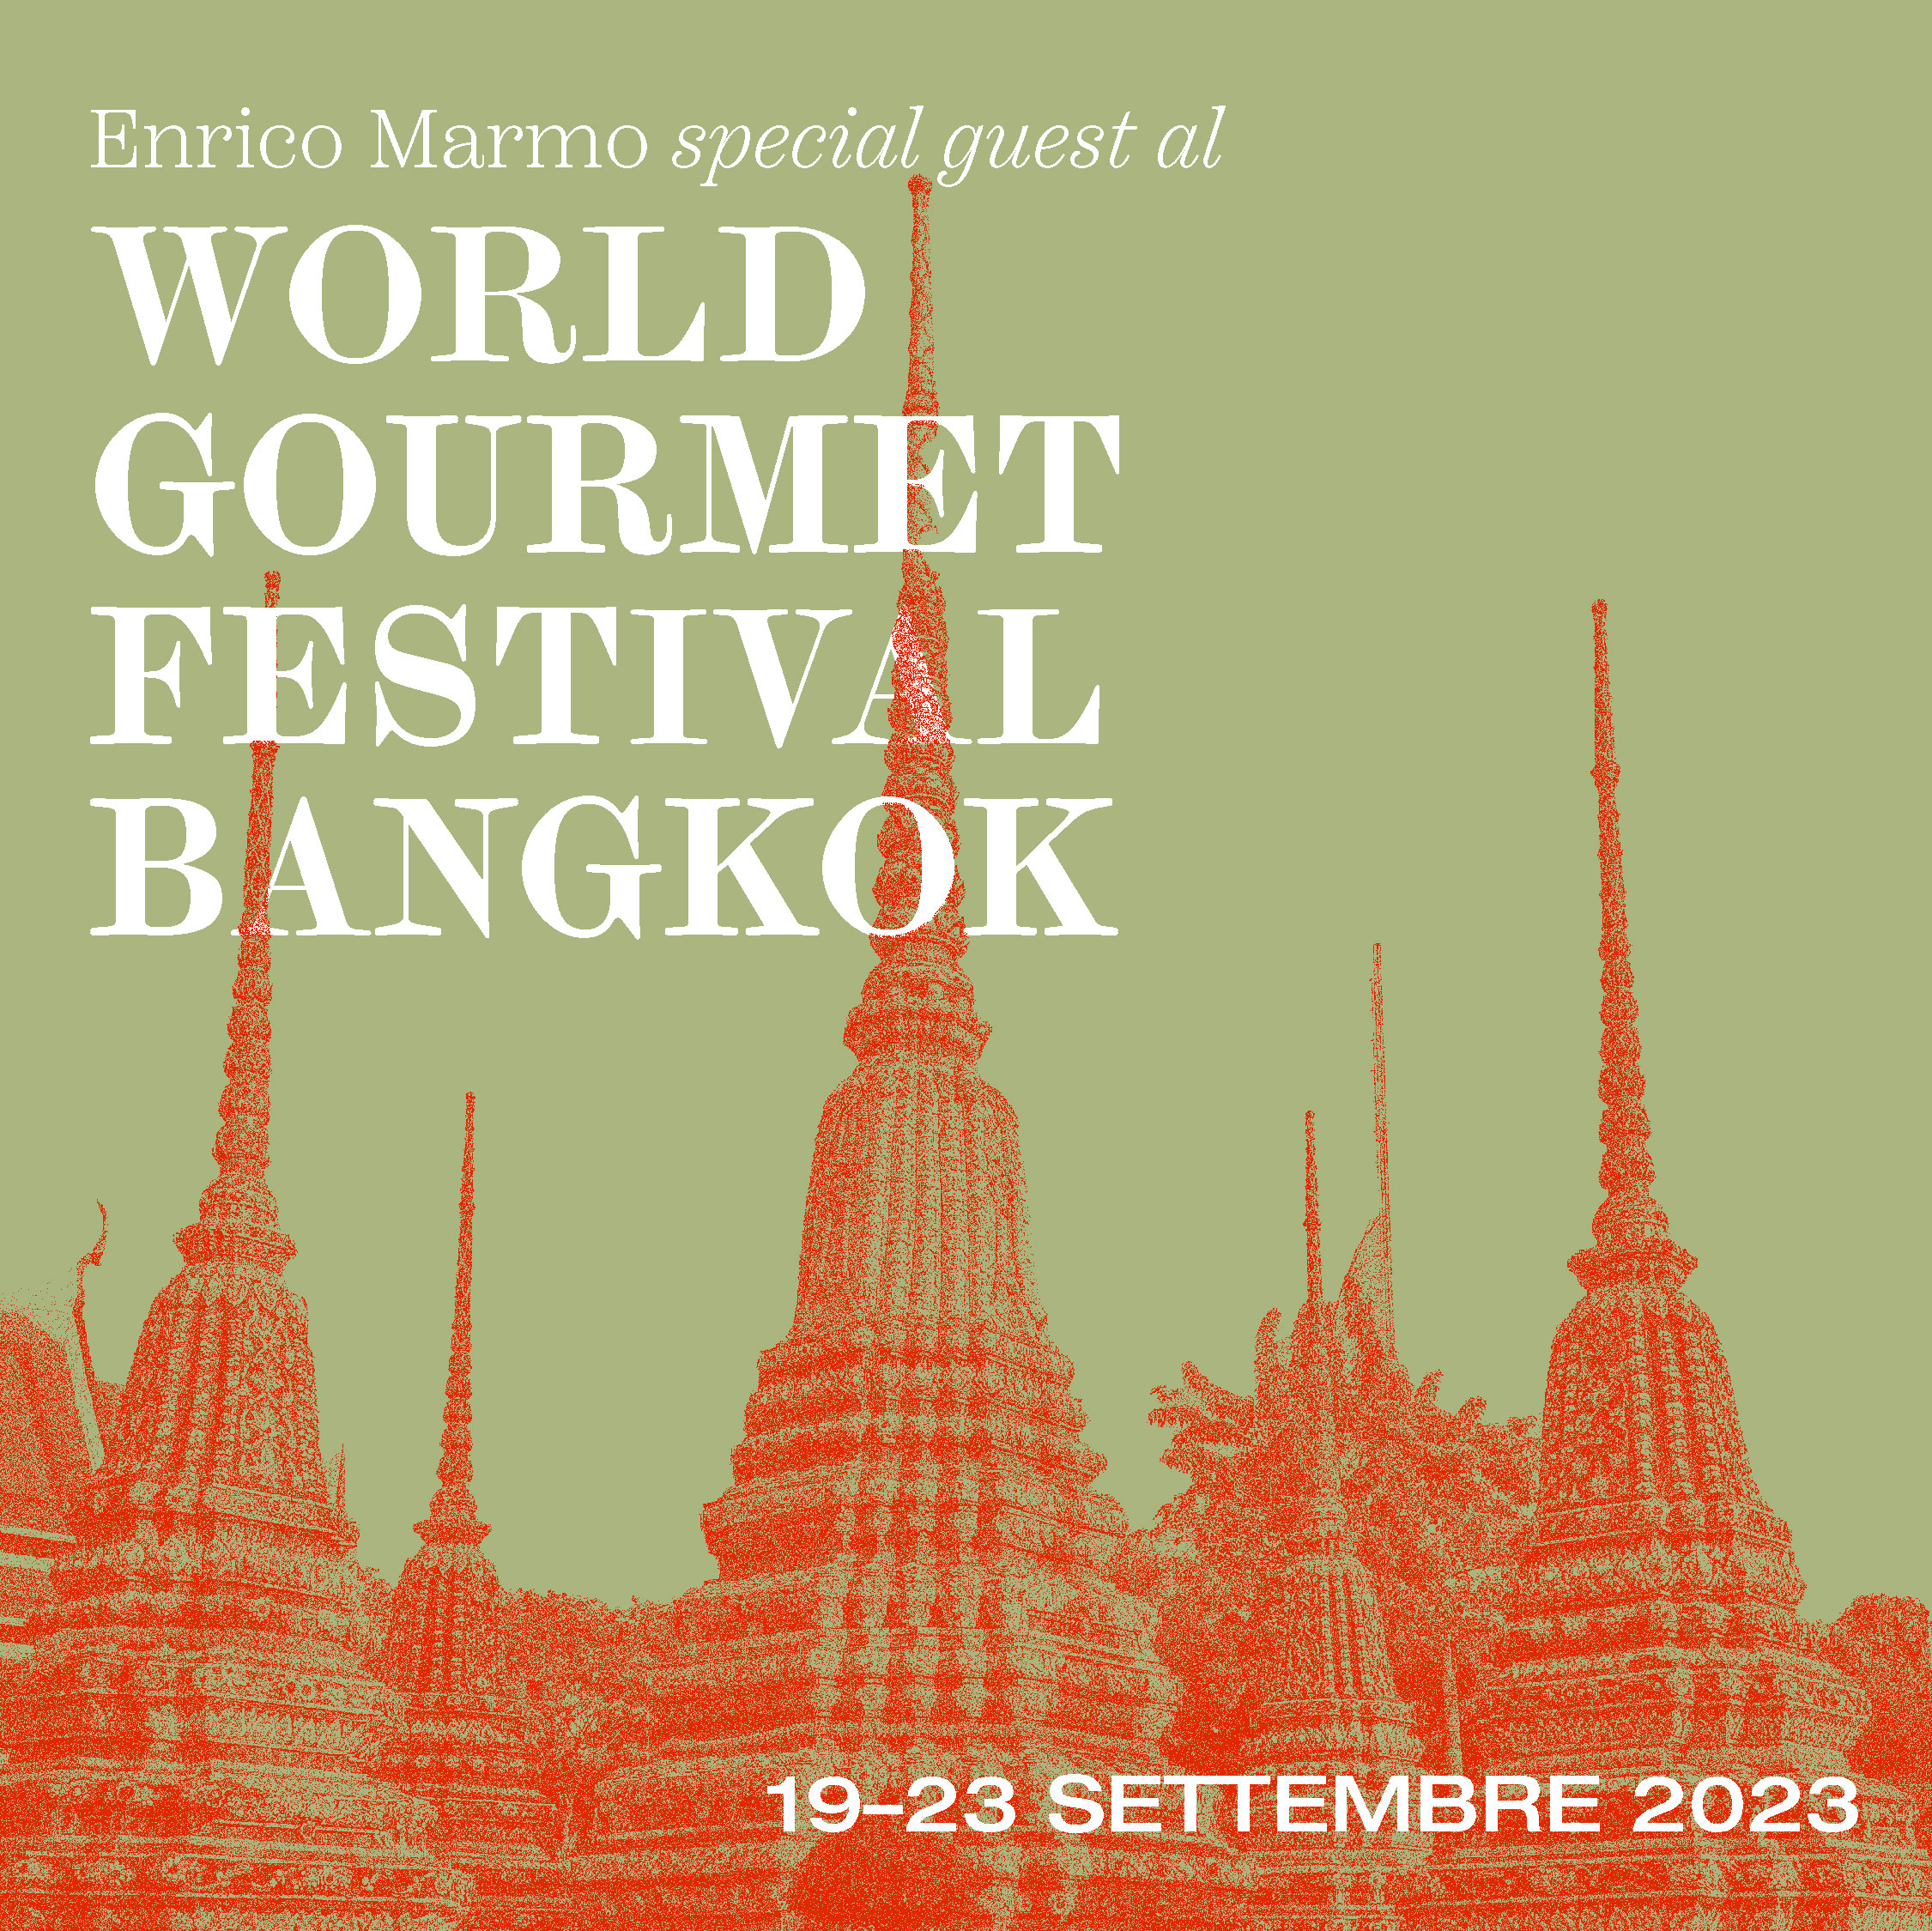 World Gourmet Festival Bangkok